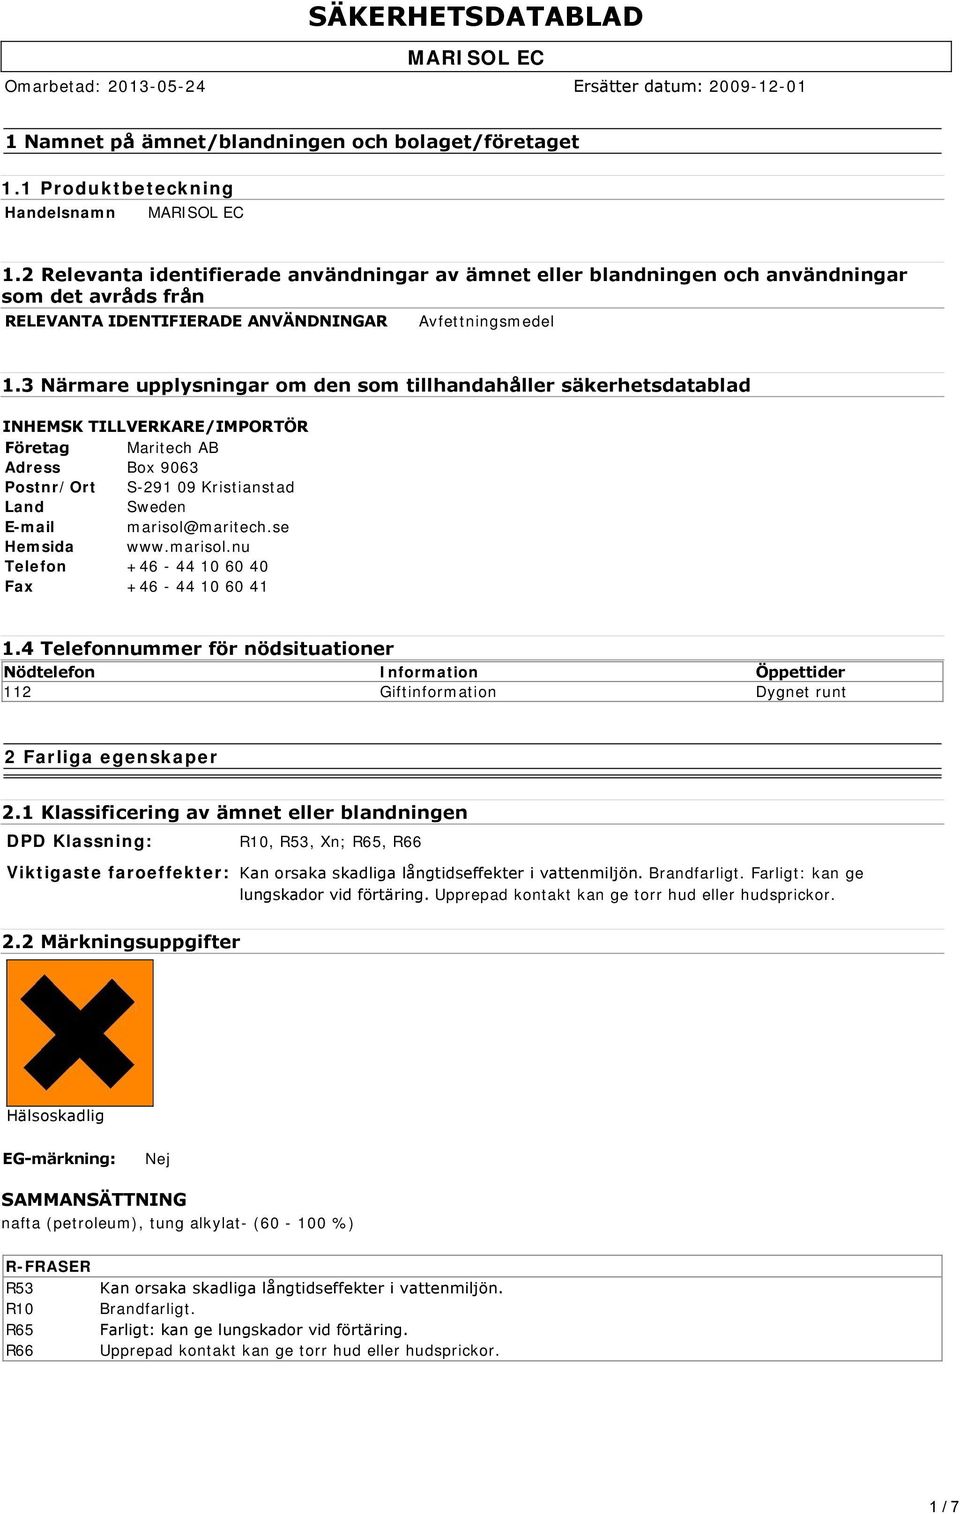 3 Närmare upplysningar om den som tillhandahåller säkerhetsdatablad INHEMSK TILLVERKARE/IMPORTÖR Företag Maritech AB Adress Box 9063 Postnr/Ort S-291 09 Kristianstad Land Sweden E-mail